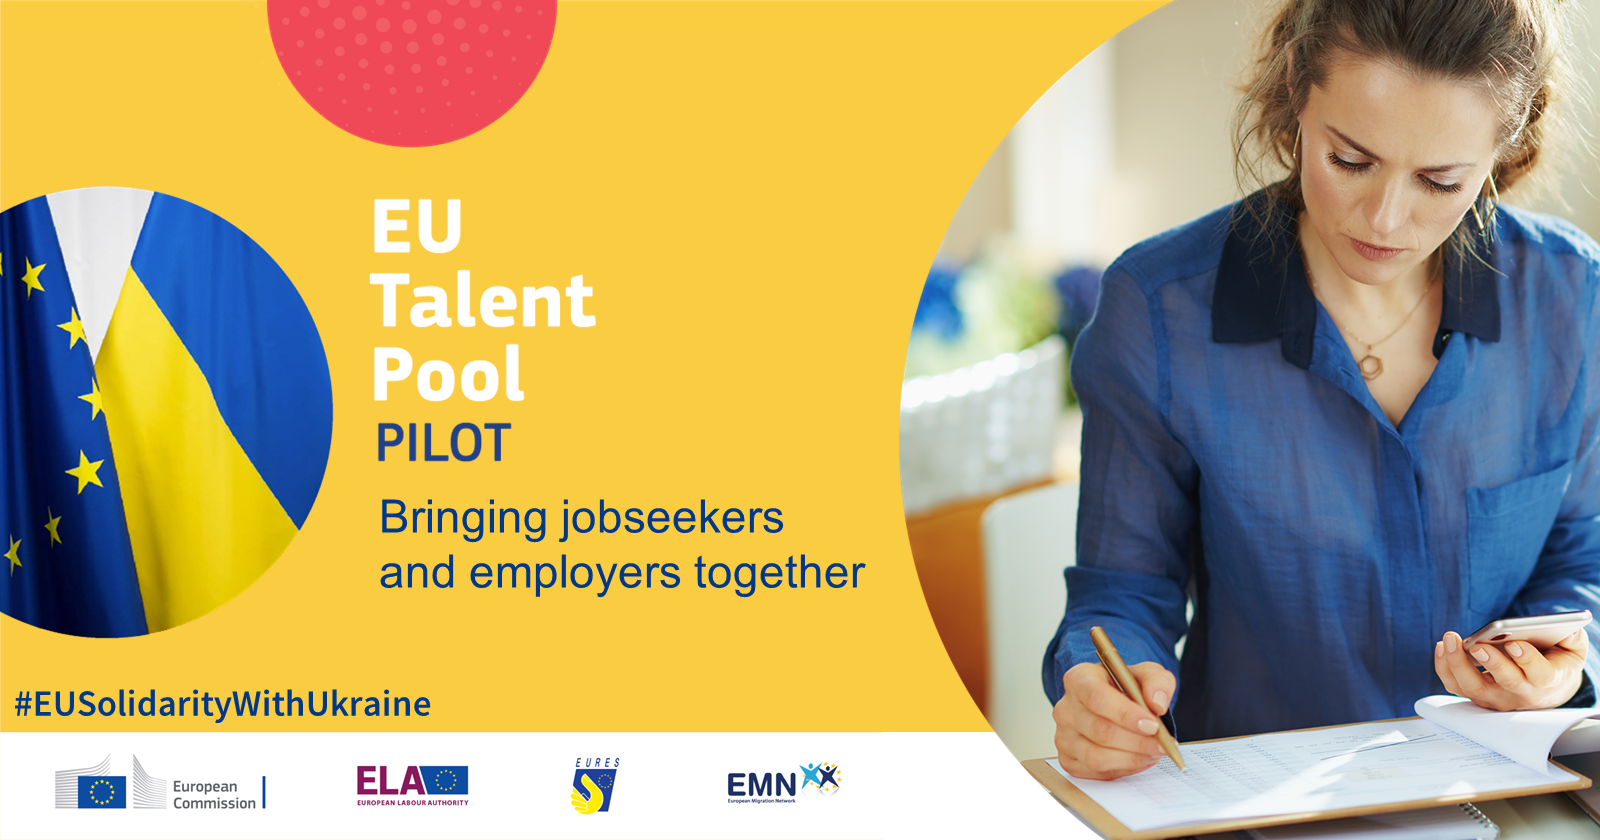 Europejska Pula Talentów – pomoc dla Ukrainy